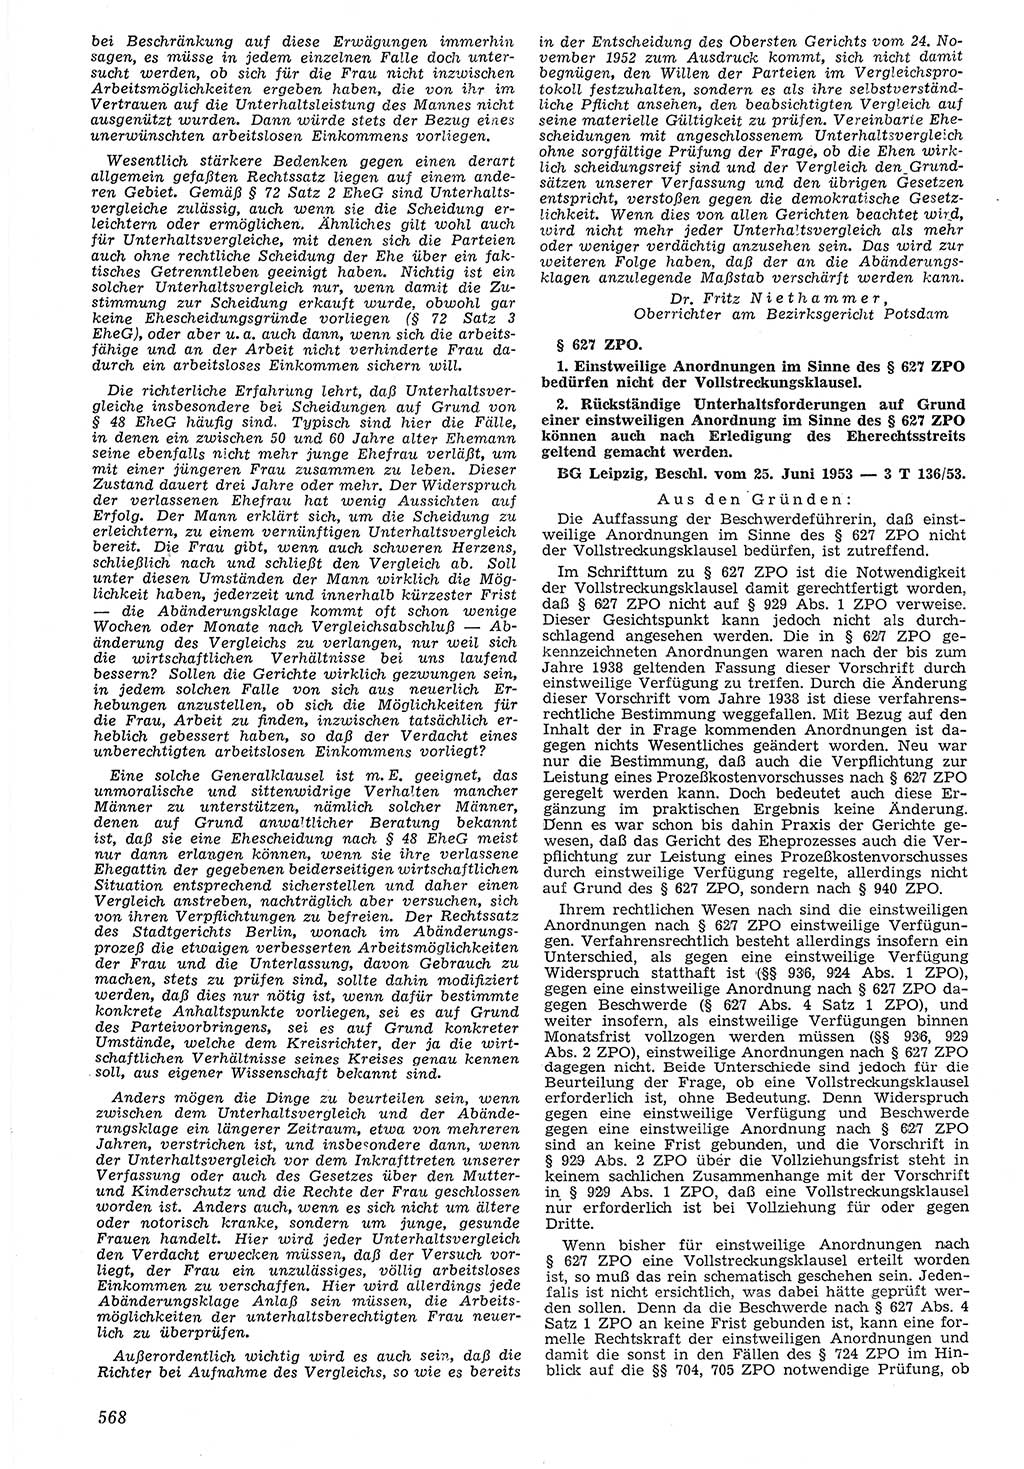 Neue Justiz (NJ), Zeitschrift für Recht und Rechtswissenschaft [Deutsche Demokratische Republik (DDR)], 7. Jahrgang 1953, Seite 568 (NJ DDR 1953, S. 568)